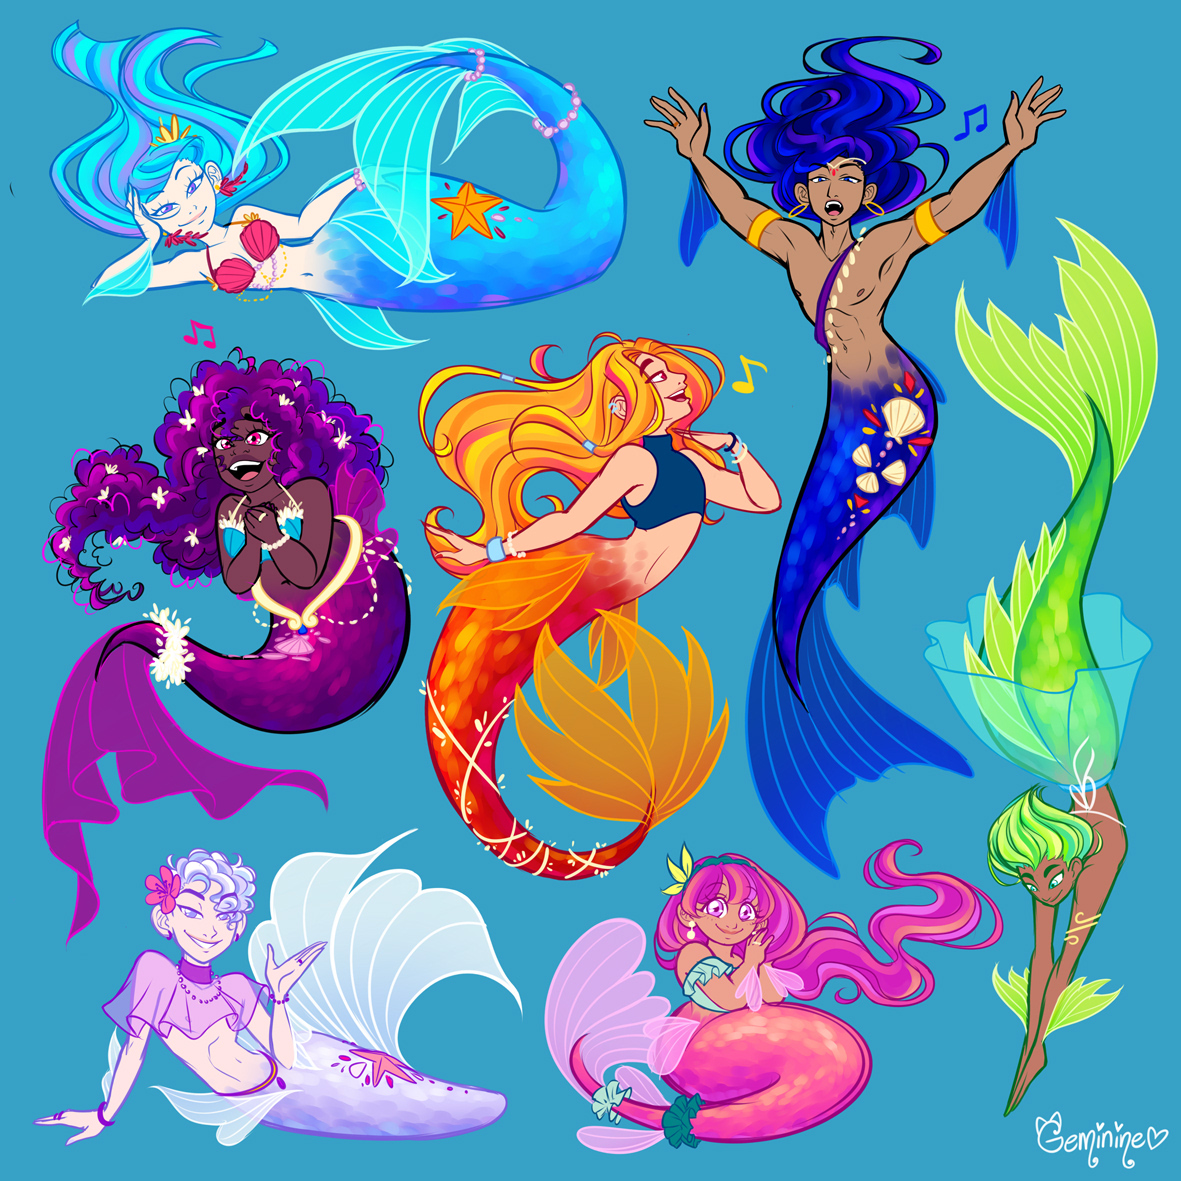 Sailors & Mermaids on Tumblr